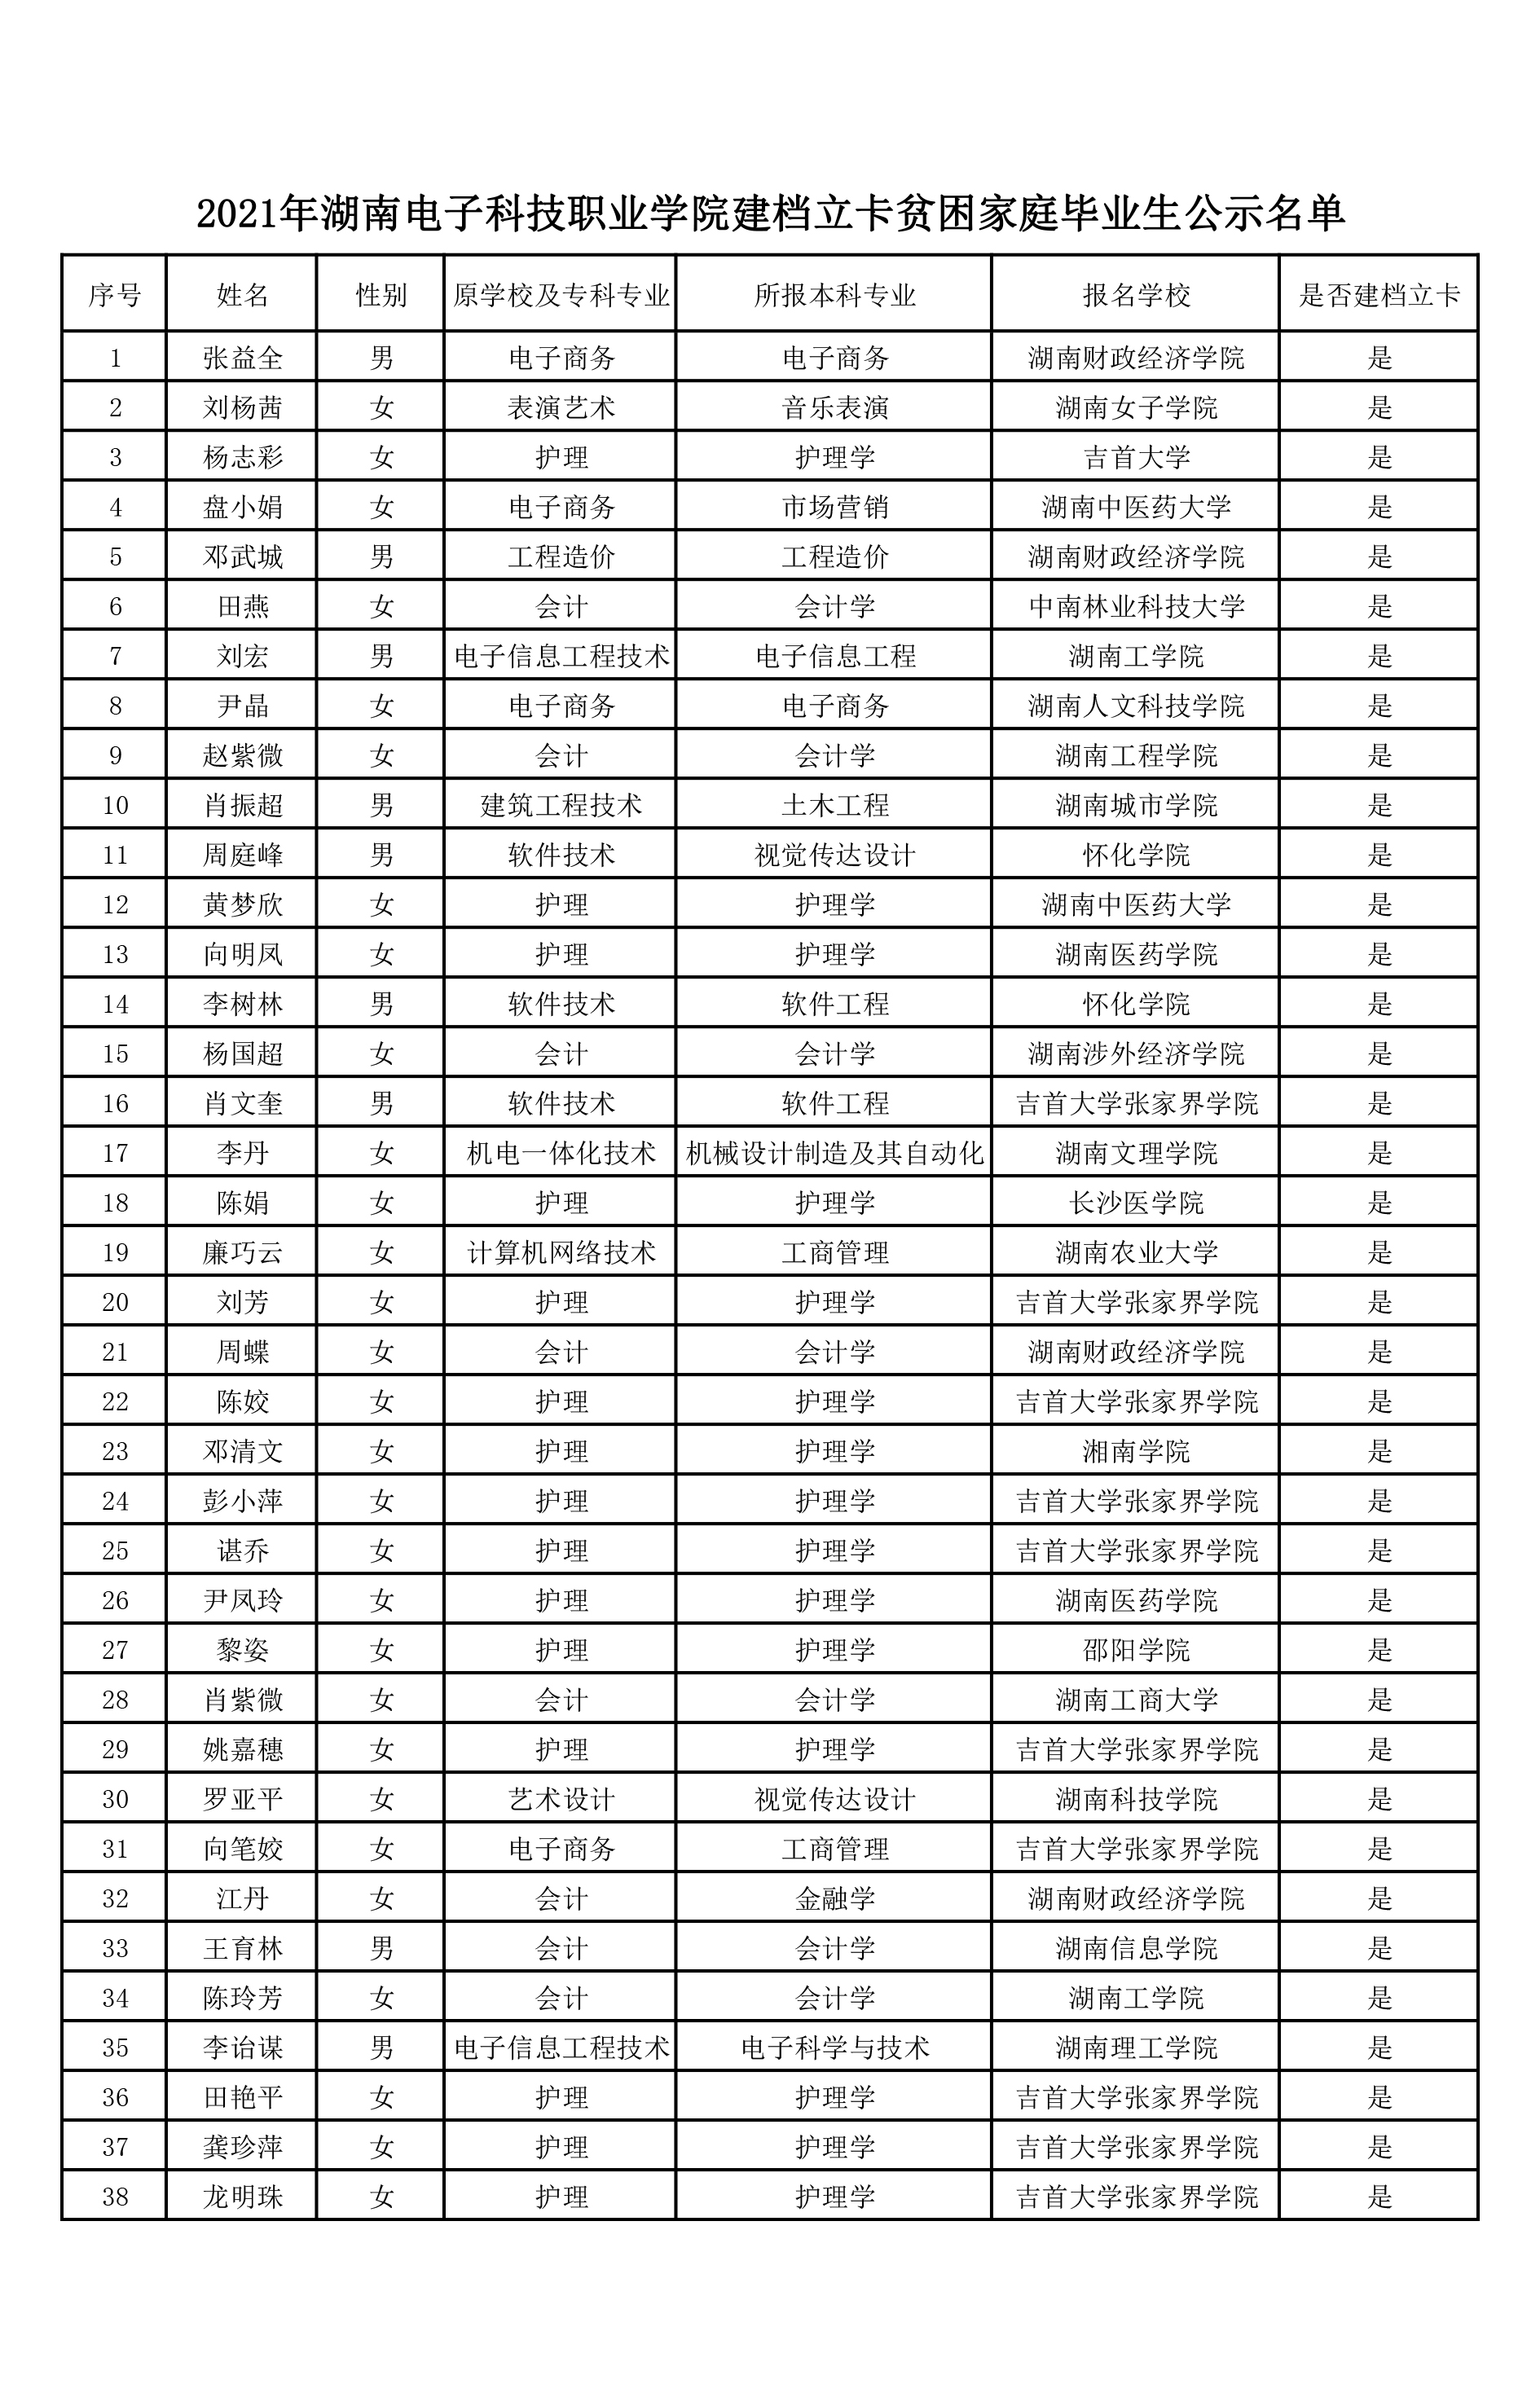 2021年湖南电子科技职业学院建档立卡贫困家庭毕业生公示名单.jpg